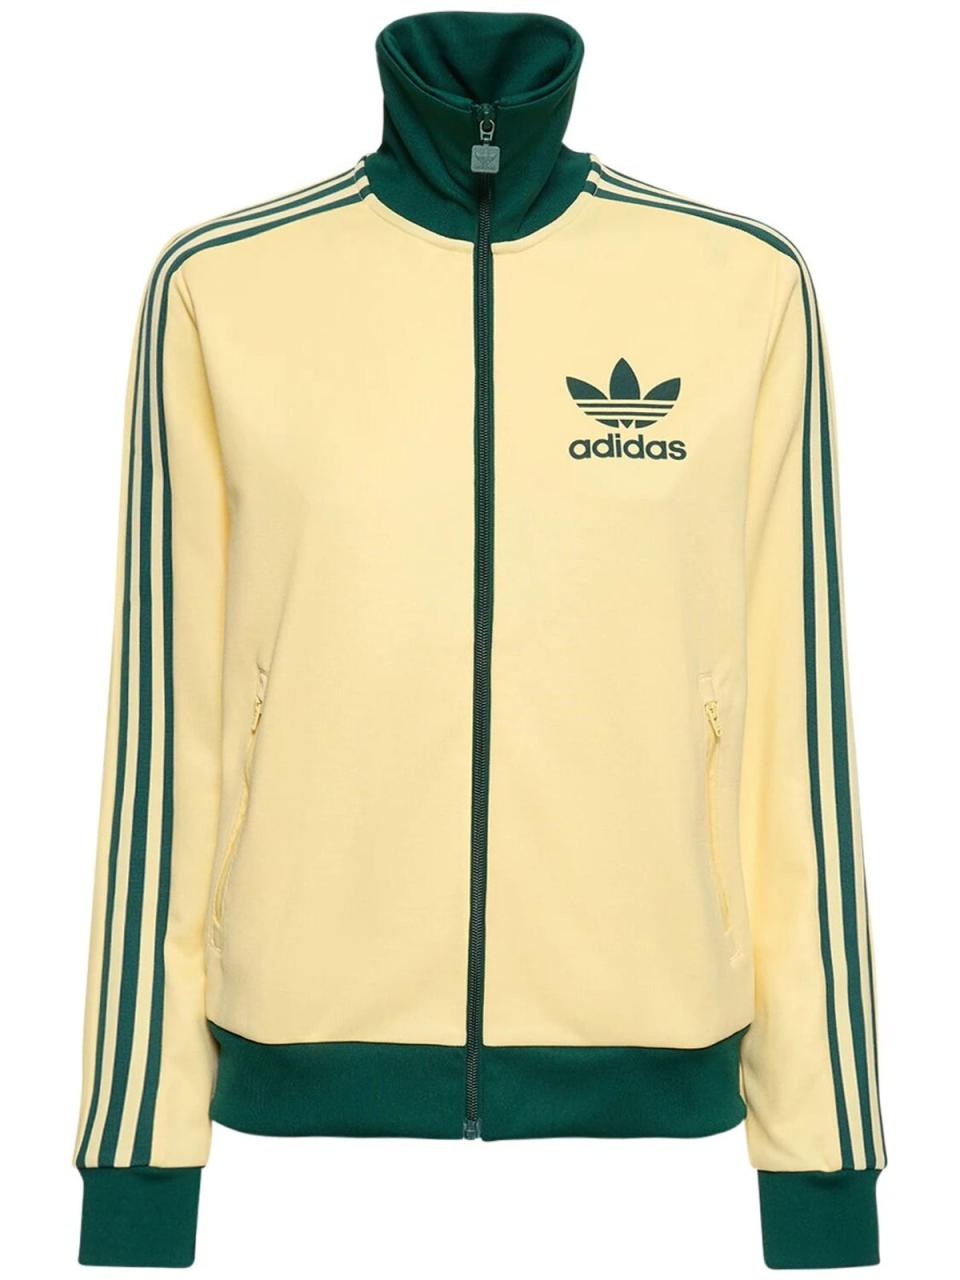 ADIDAS ORIGINALS Beckenbauer track jacket, £79 (luisaviaroma.com) (ADIDAS ORIGINALS)